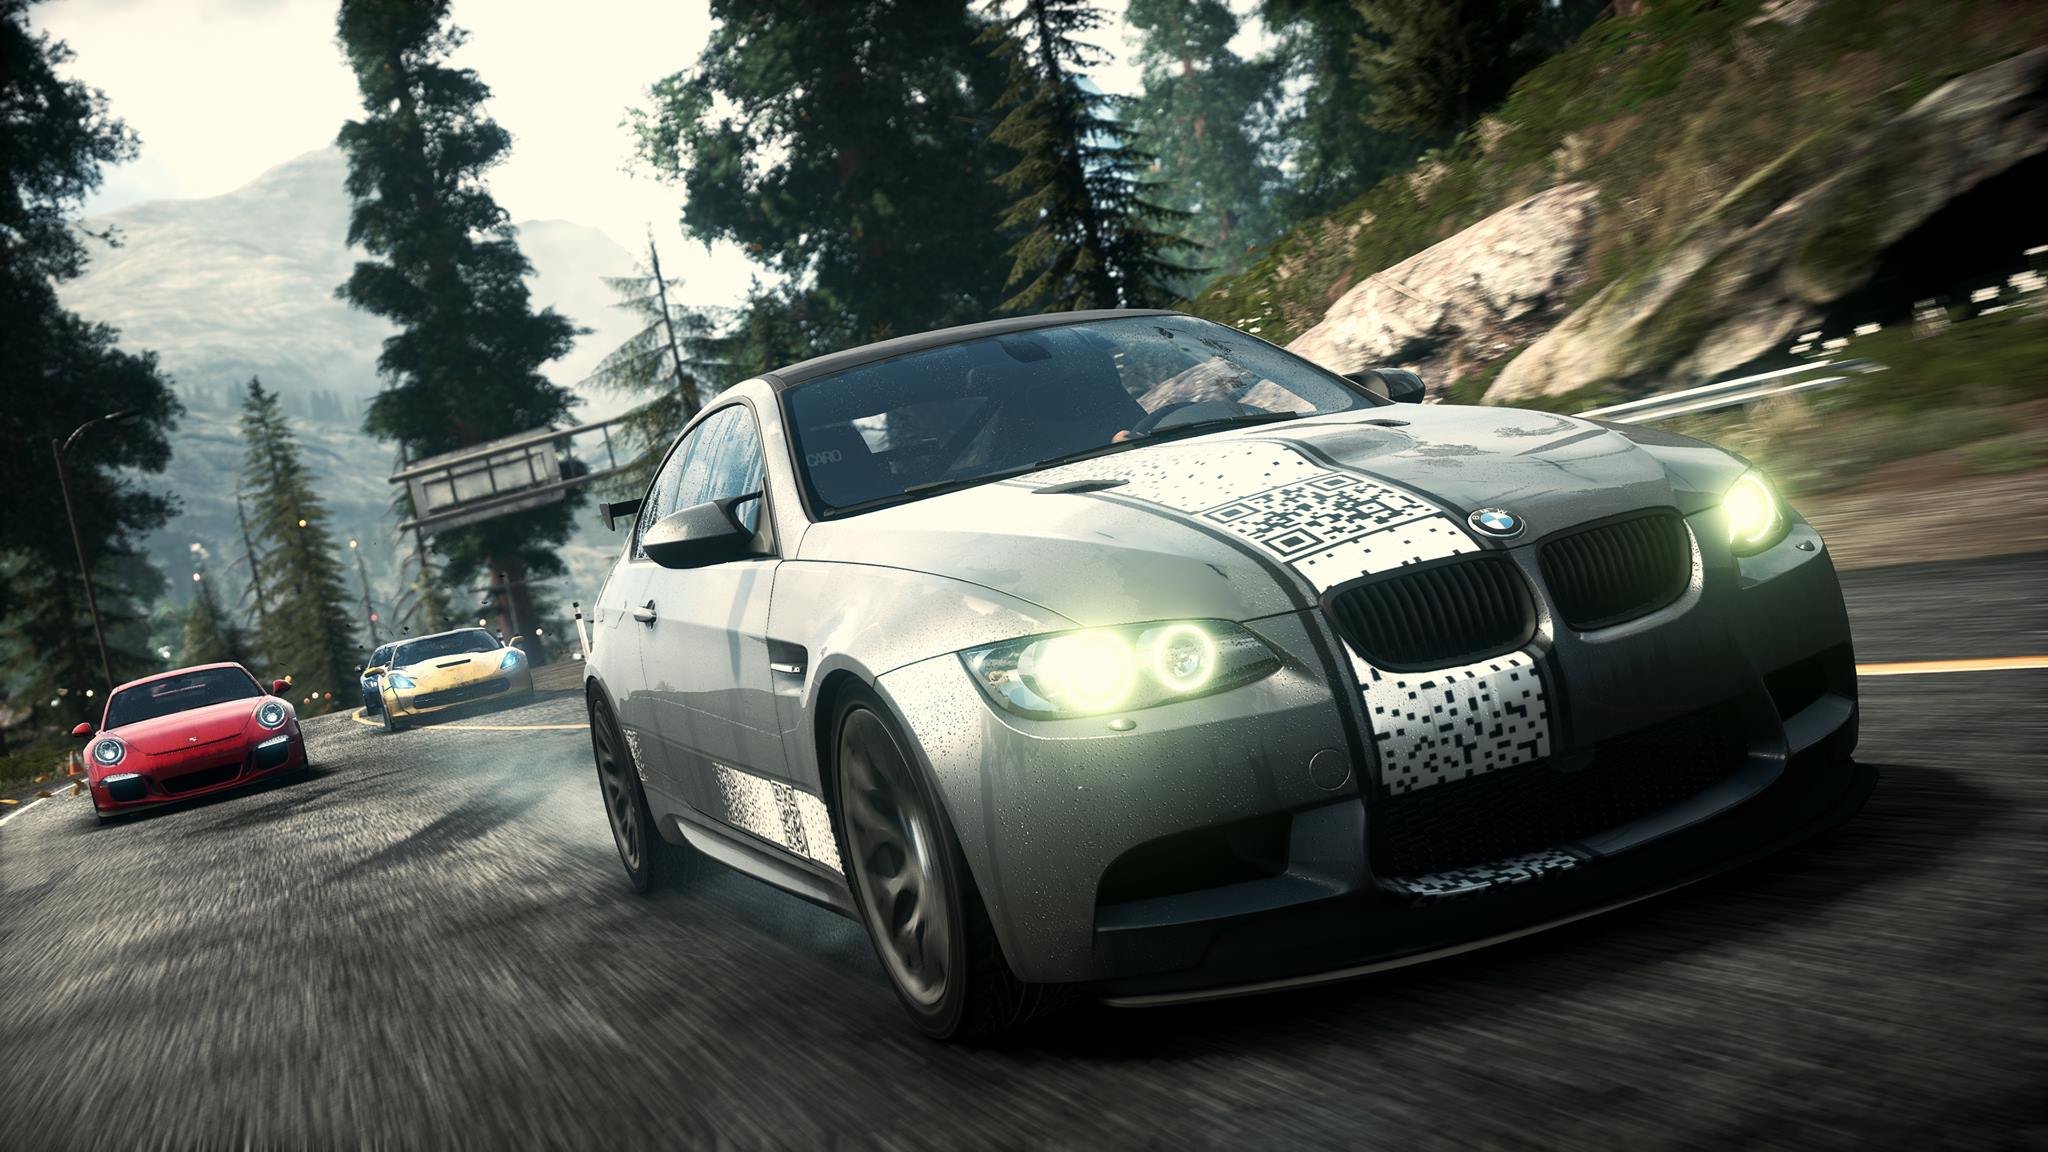 Нид фор спид версии игры. Need for Speed Rivals Xbox 360. Need for Speed Rivals BMW m3 GTR. Игра NFS Rivals. Need for Speed Rivals 2013.